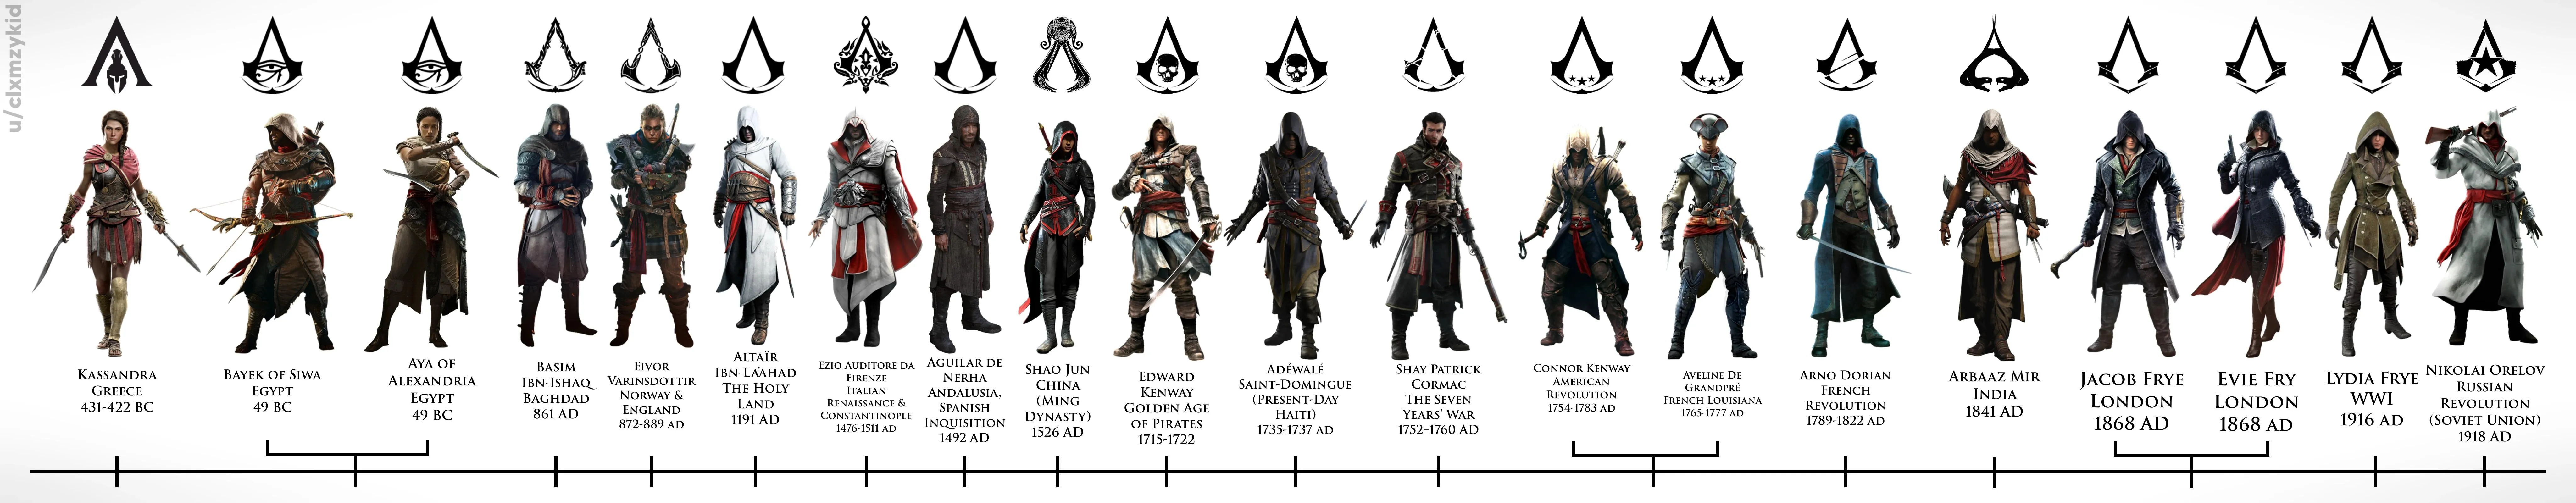 хронологія персонажів Assassin's Creed